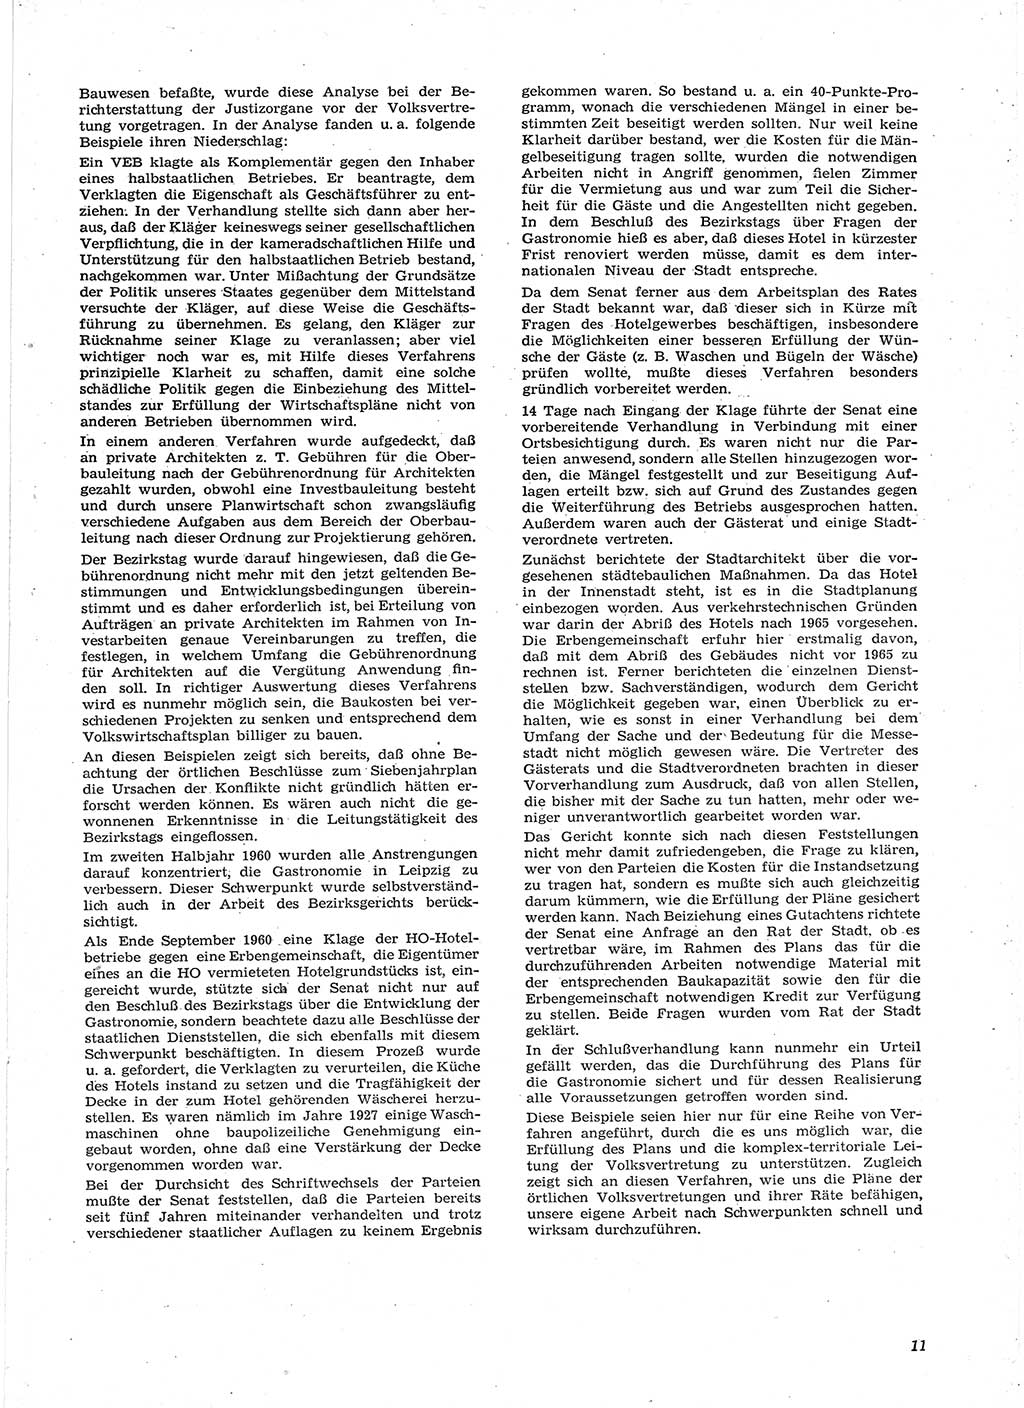 Neue Justiz (NJ), Zeitschrift für Recht und Rechtswissenschaft [Deutsche Demokratische Republik (DDR)], 15. Jahrgang 1961, Seite 11 (NJ DDR 1961, S. 11)